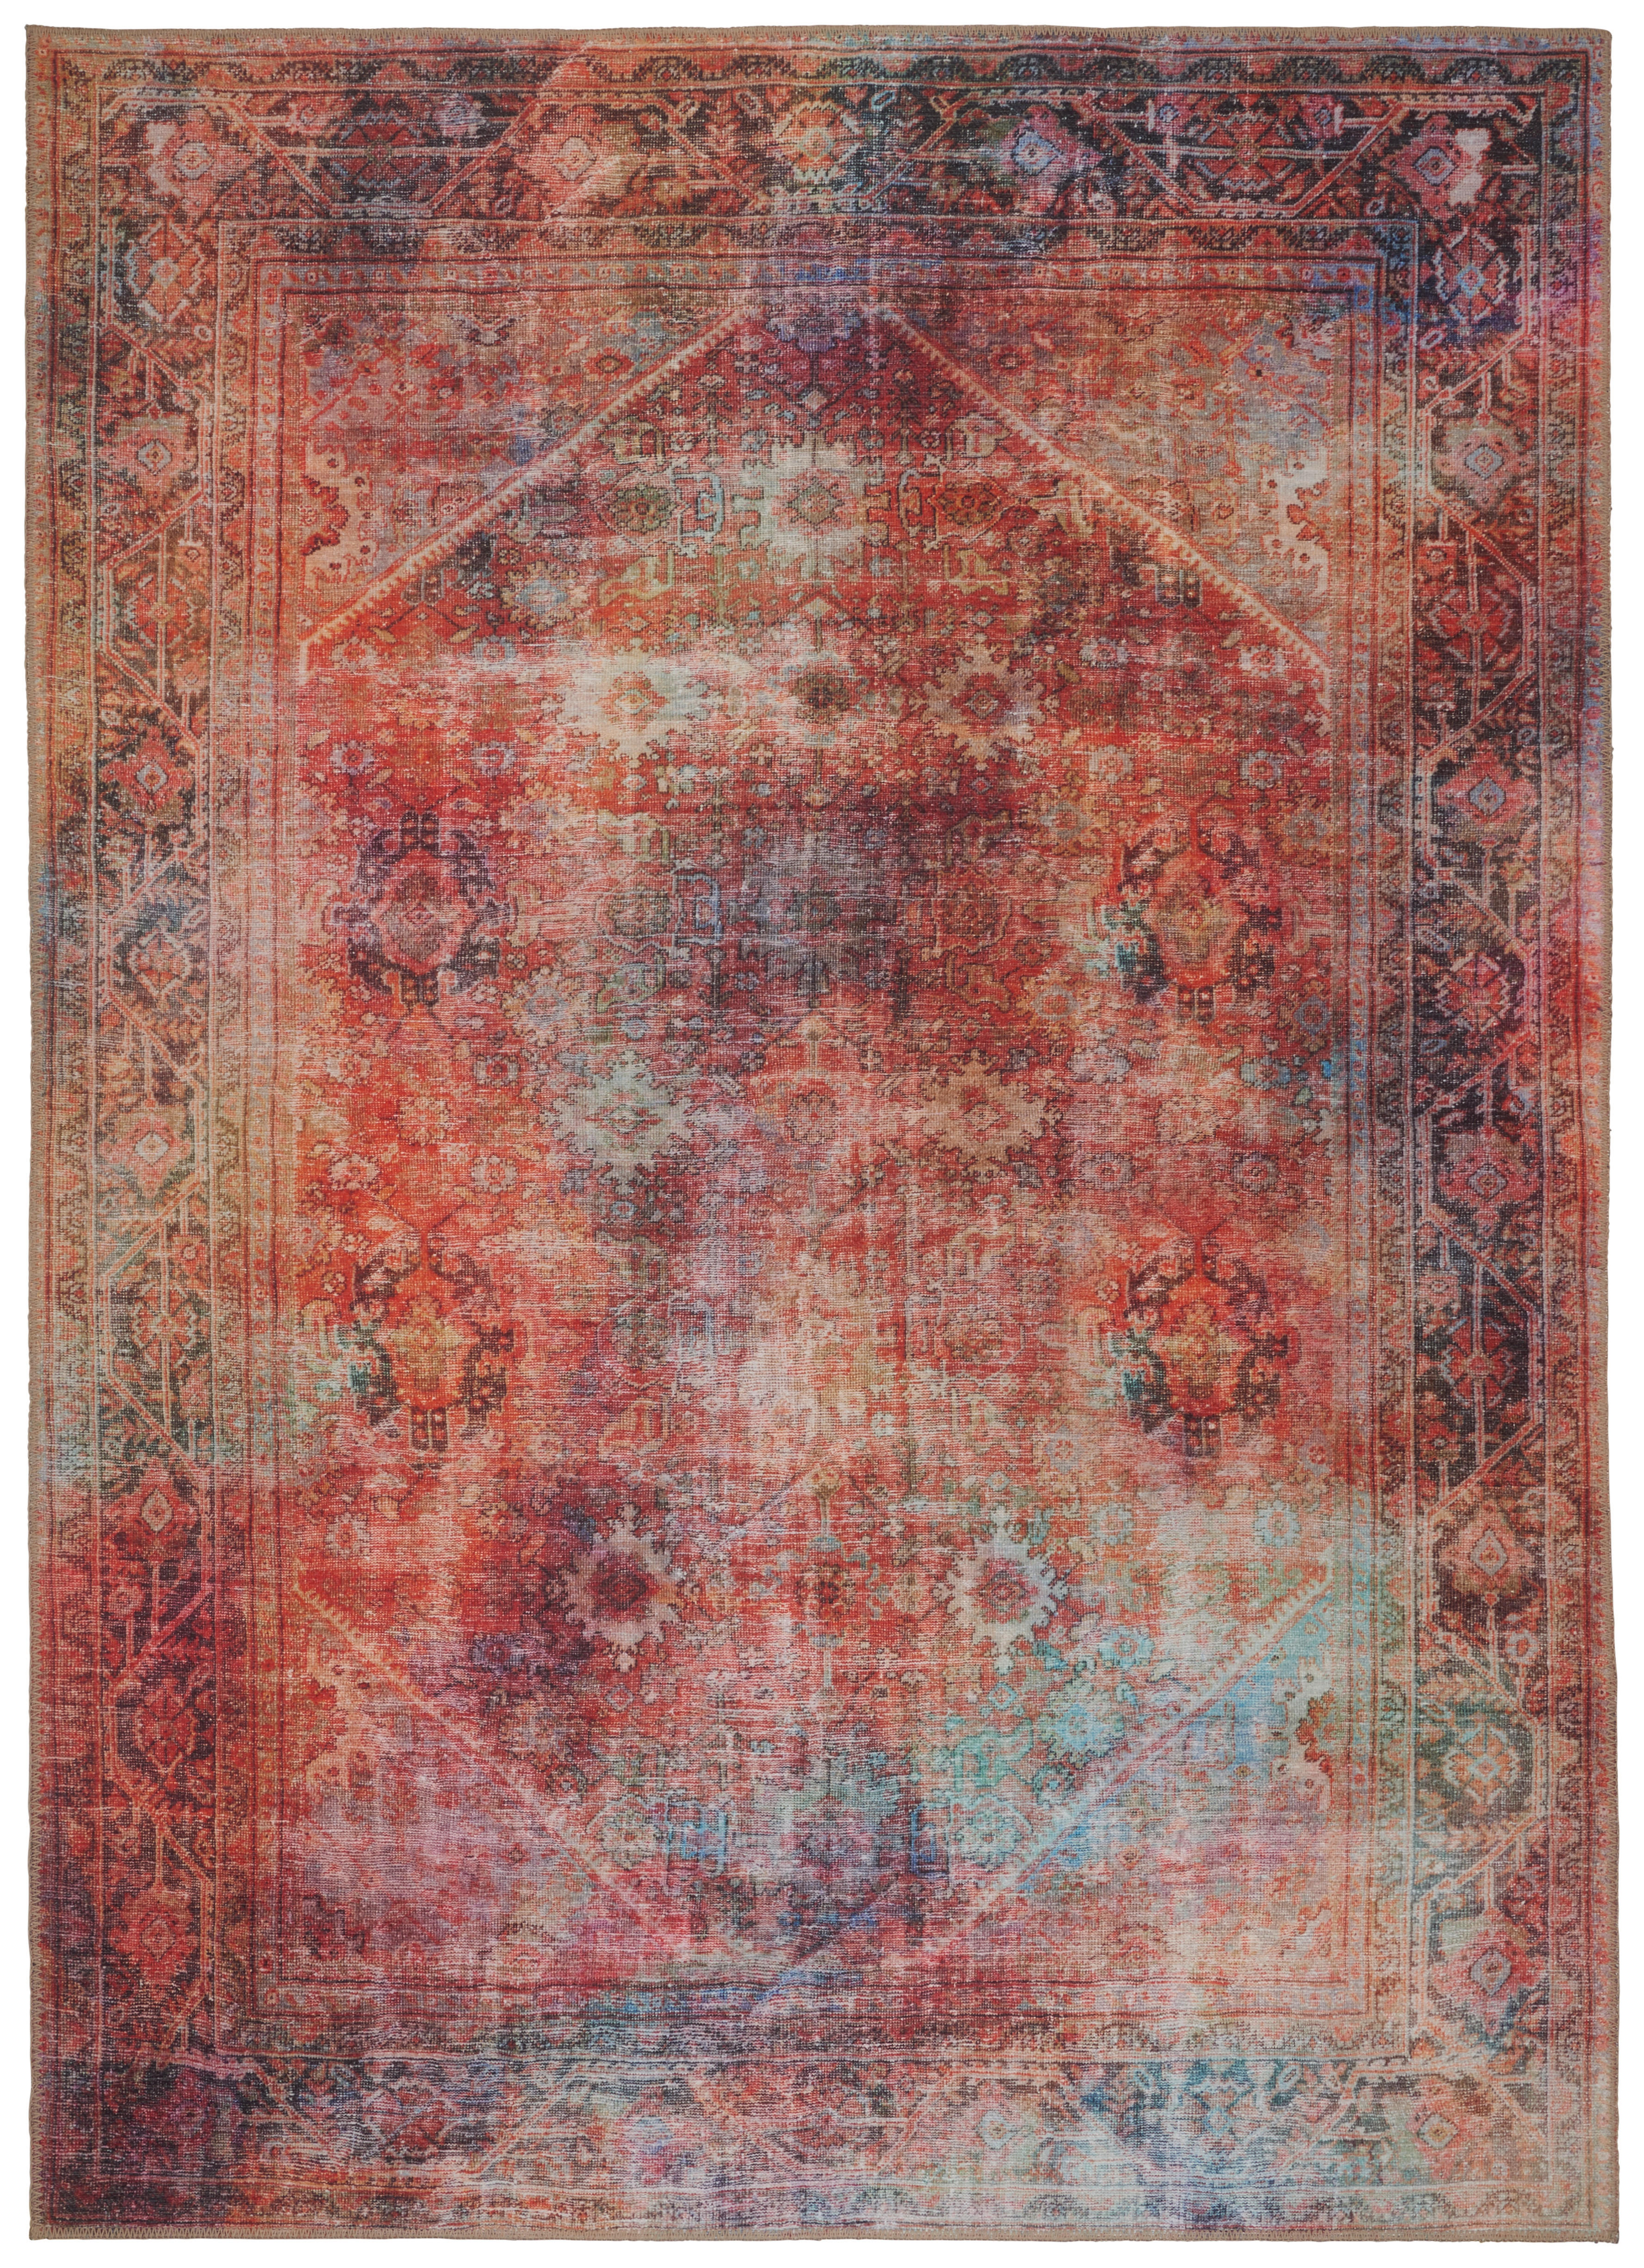 VINTAGE-TEPPICH  160/230 cm  Multicolor   - Multicolor, Trend, Textil (160/230cm) - Novel